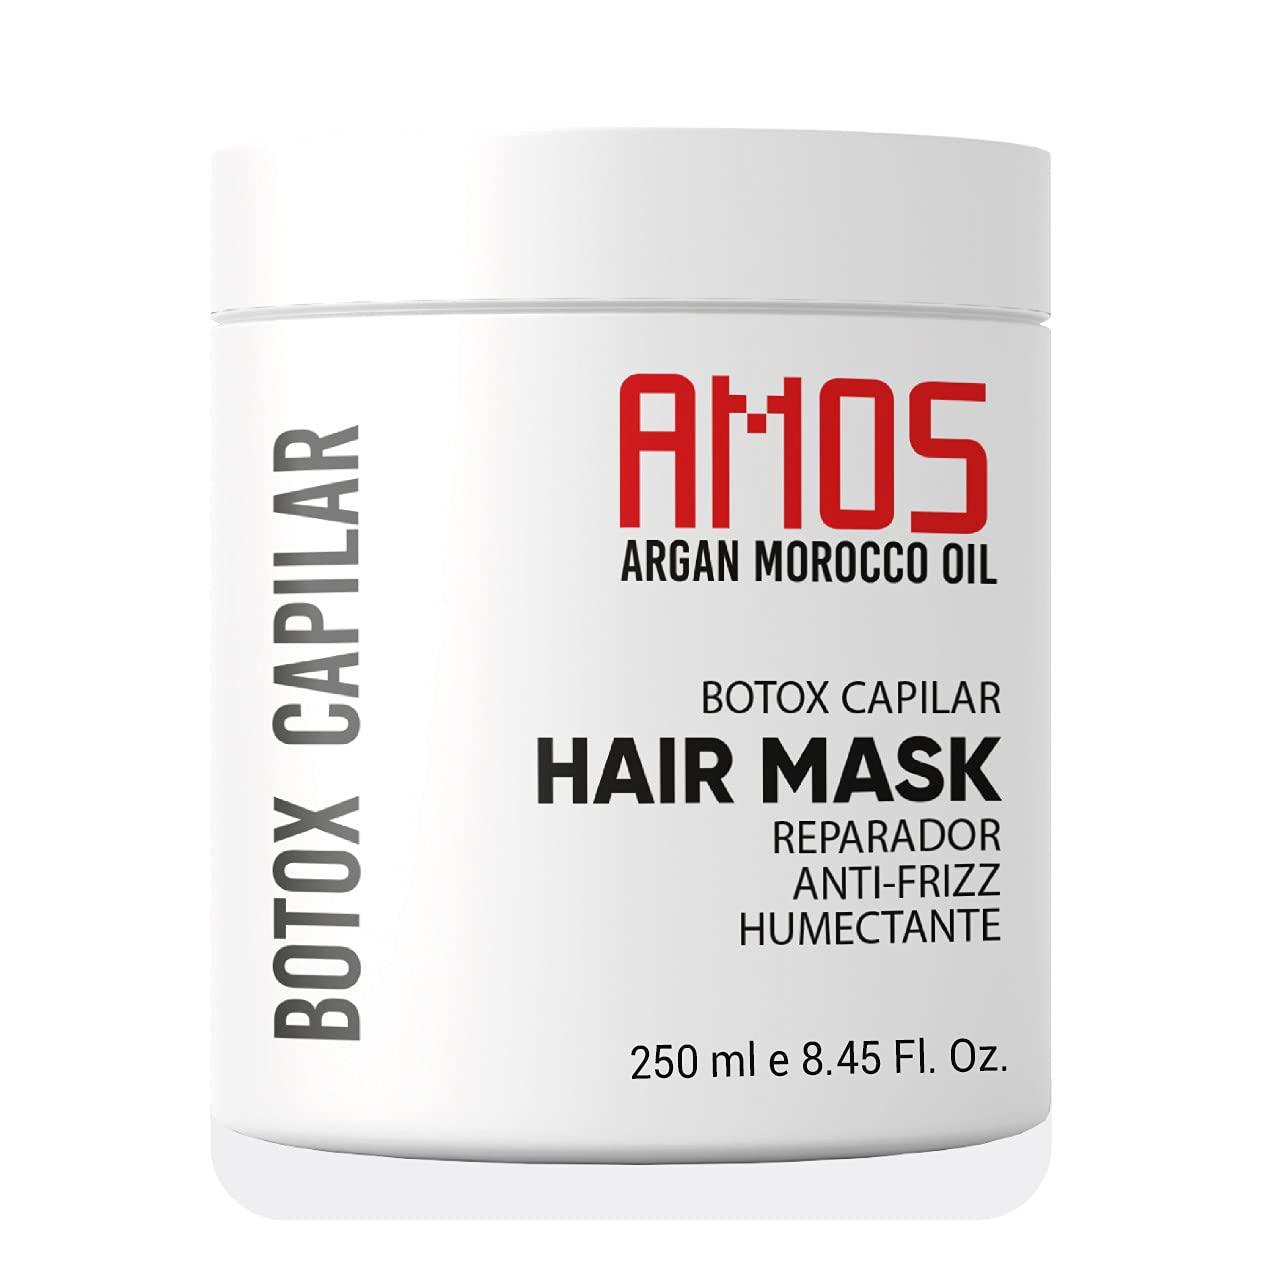 AMOS Hair Botox Mask Treatment 250 ml, ( 8.45 fl oz) El mejor tratamiento con aceite marroquí de Argan Natural Morocco para cabello seco y dañado profesional para la reparación, nutrición y belleza del cabello. Libre de formaldehído.